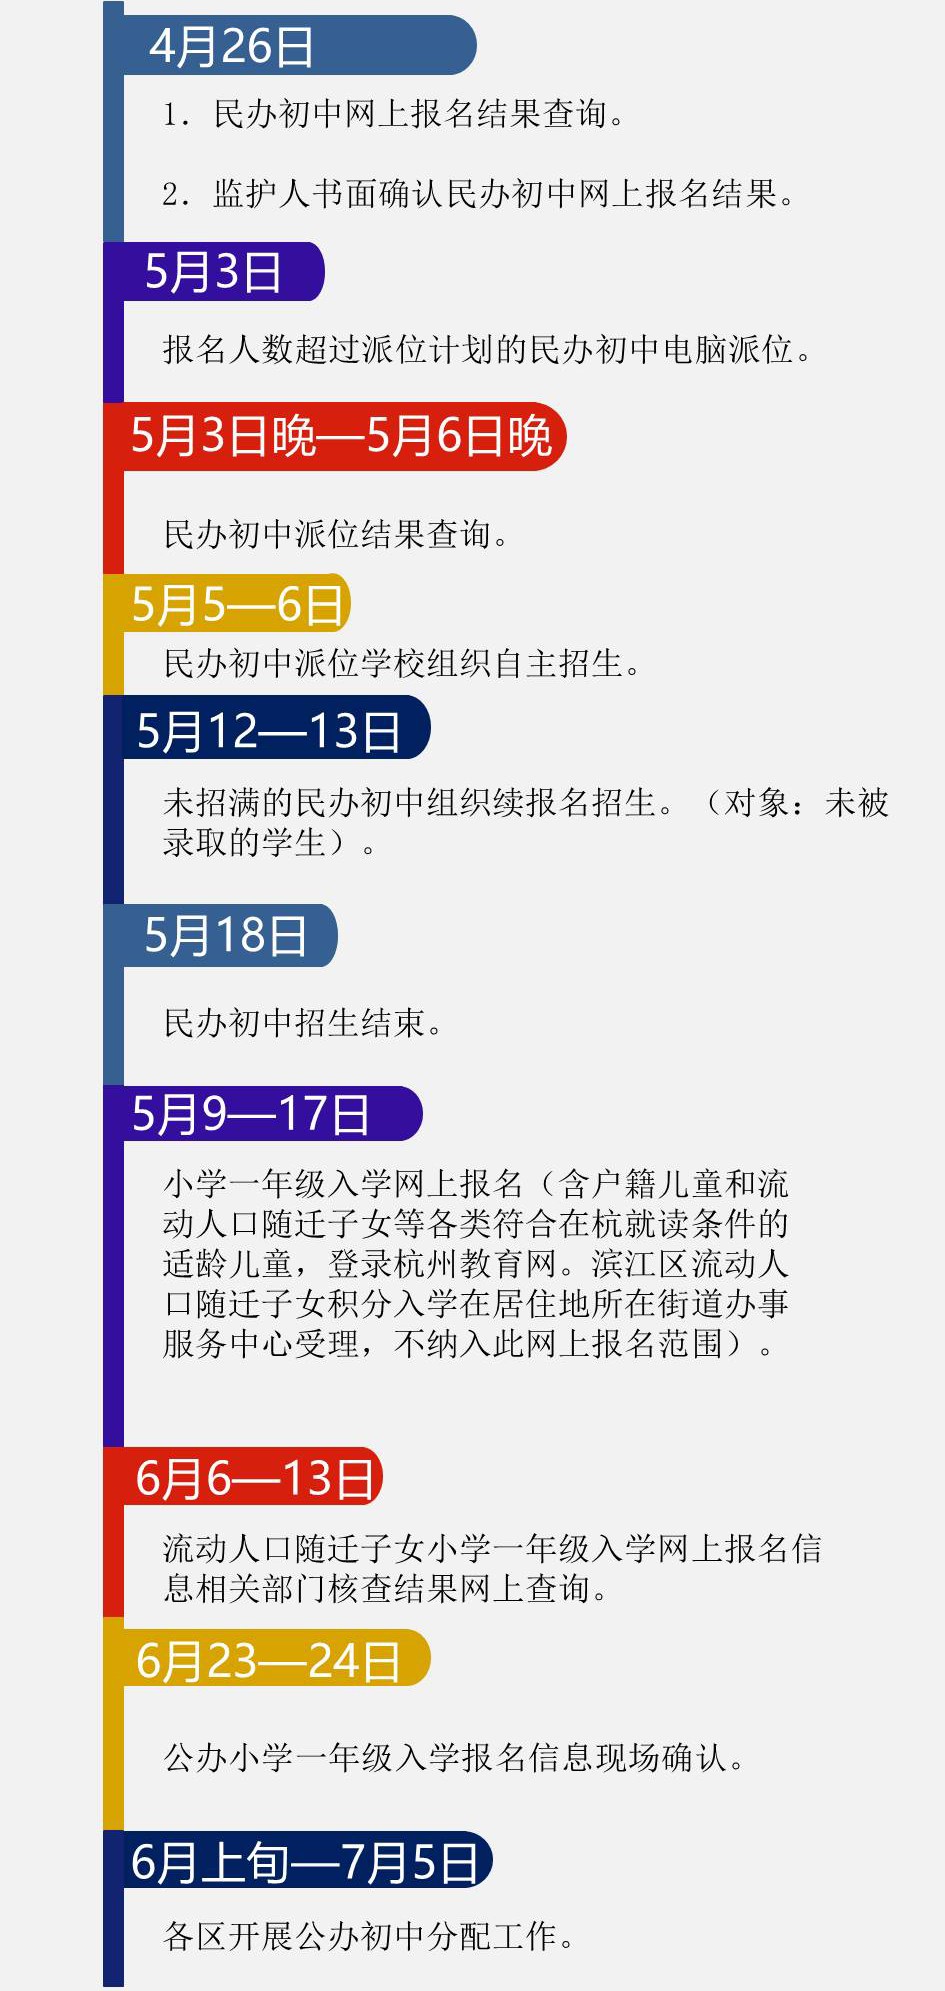 2018年杭州义务教育阶段学校招生工作时间表2